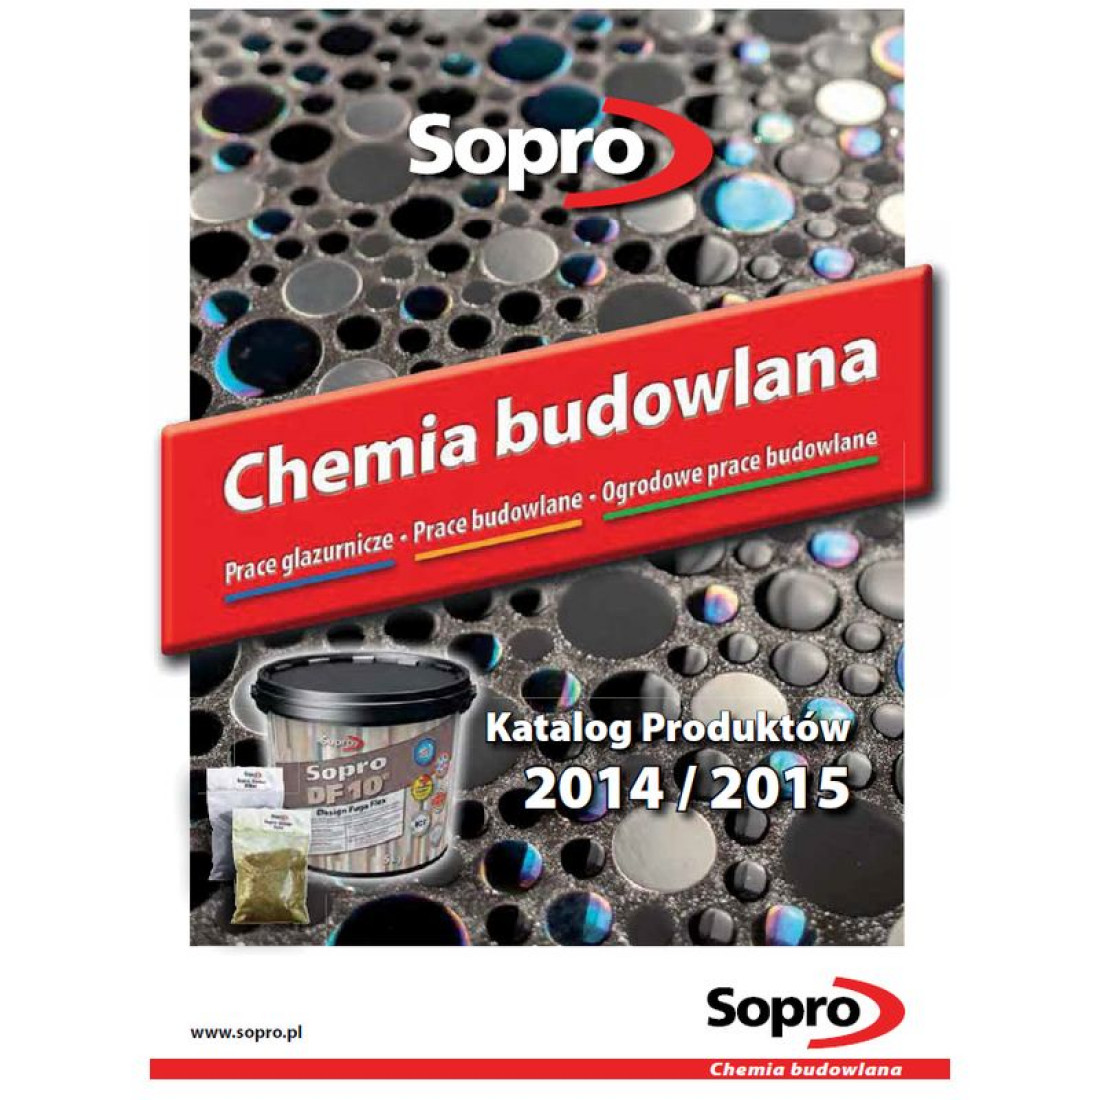 Katalog produktów 2014/2015 przedstawia firma Sopro